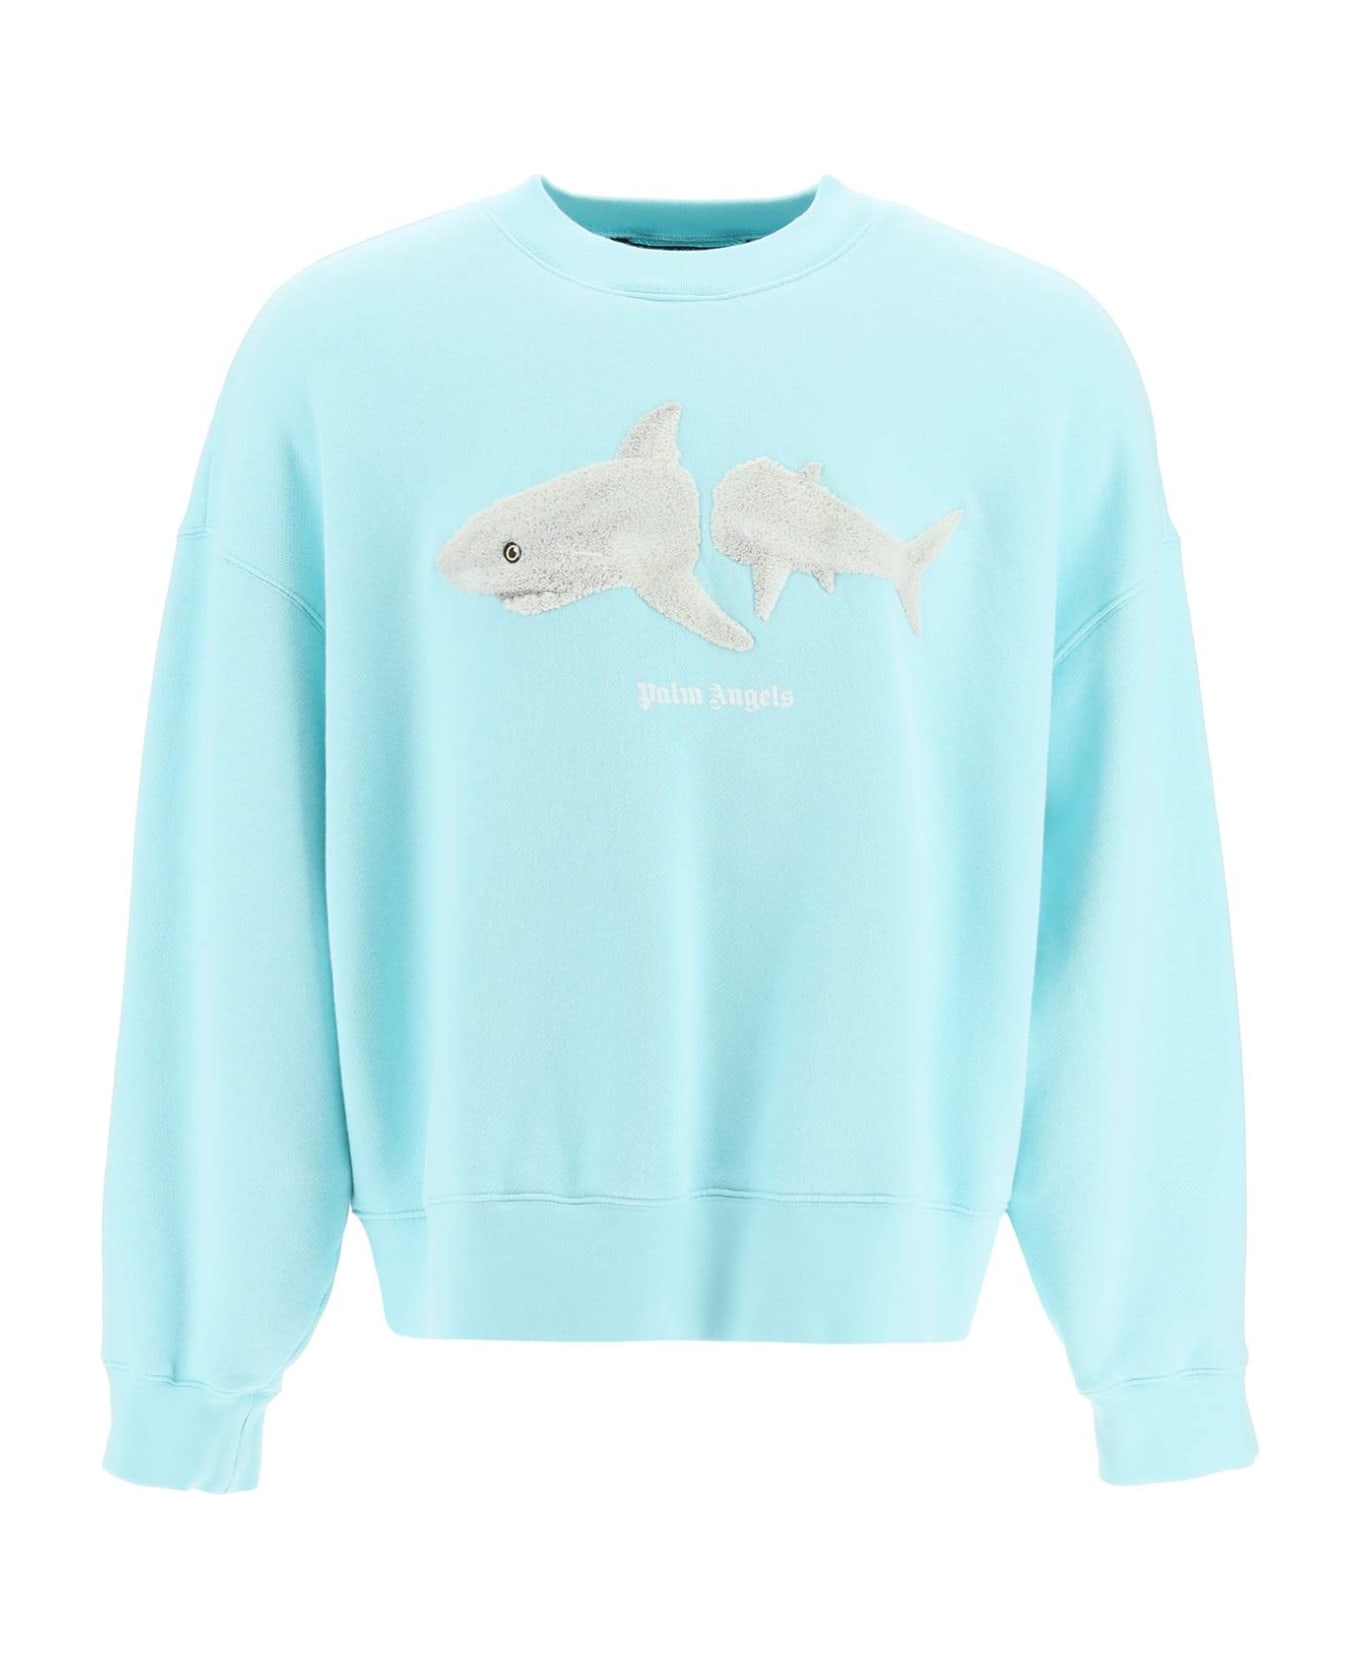 Palm Angels Shark Patch Sweater - Light blue